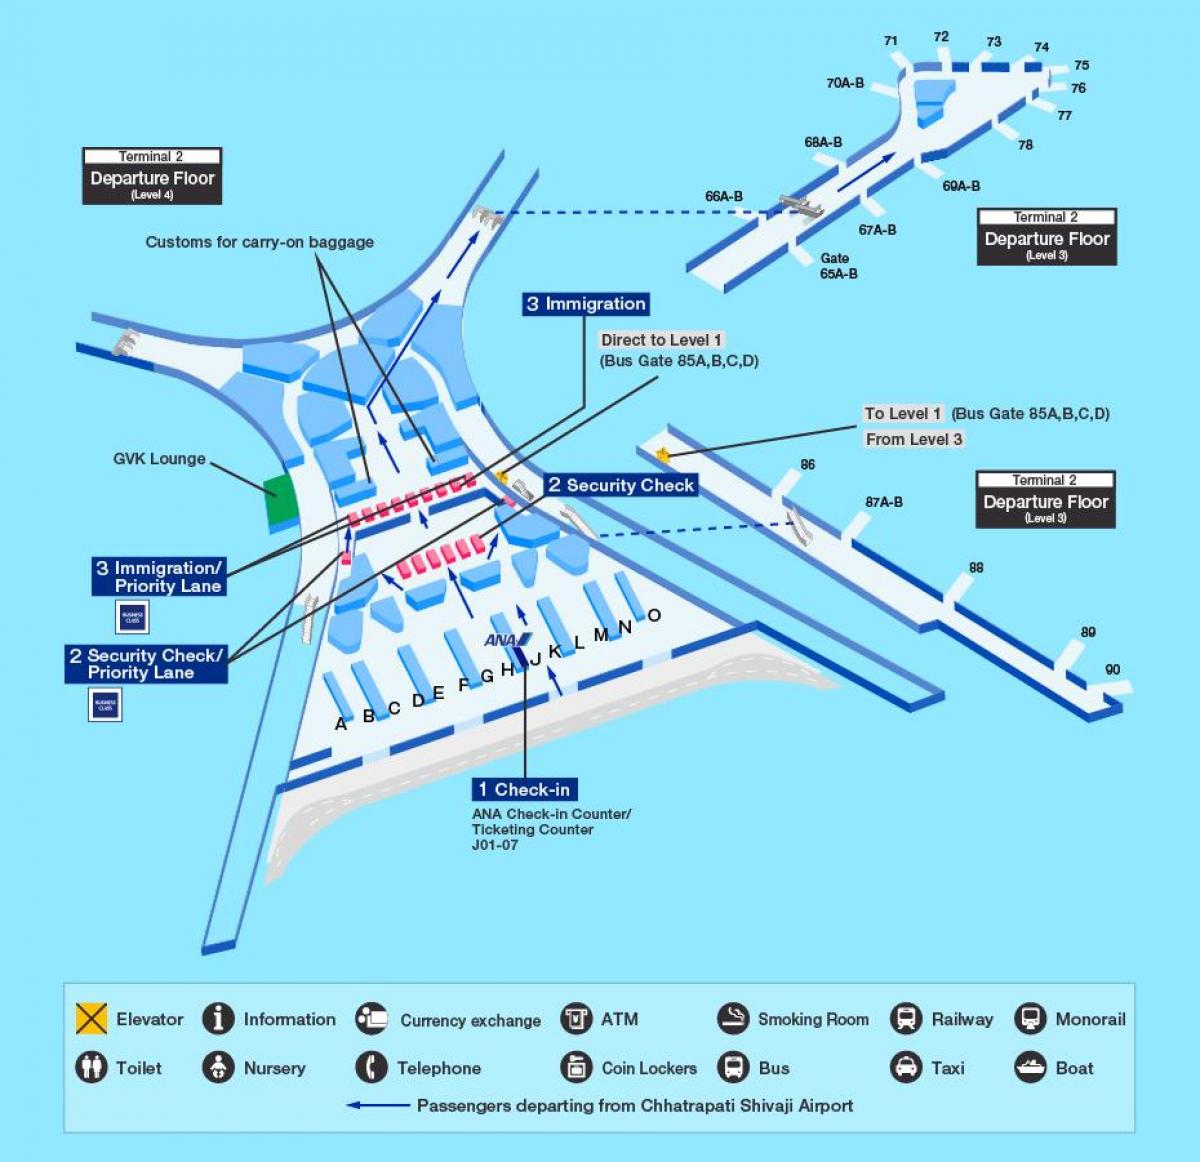 छत्रपति शिवाजी अंतरराष्ट्रीय हवाई अड्डे का नक्शा